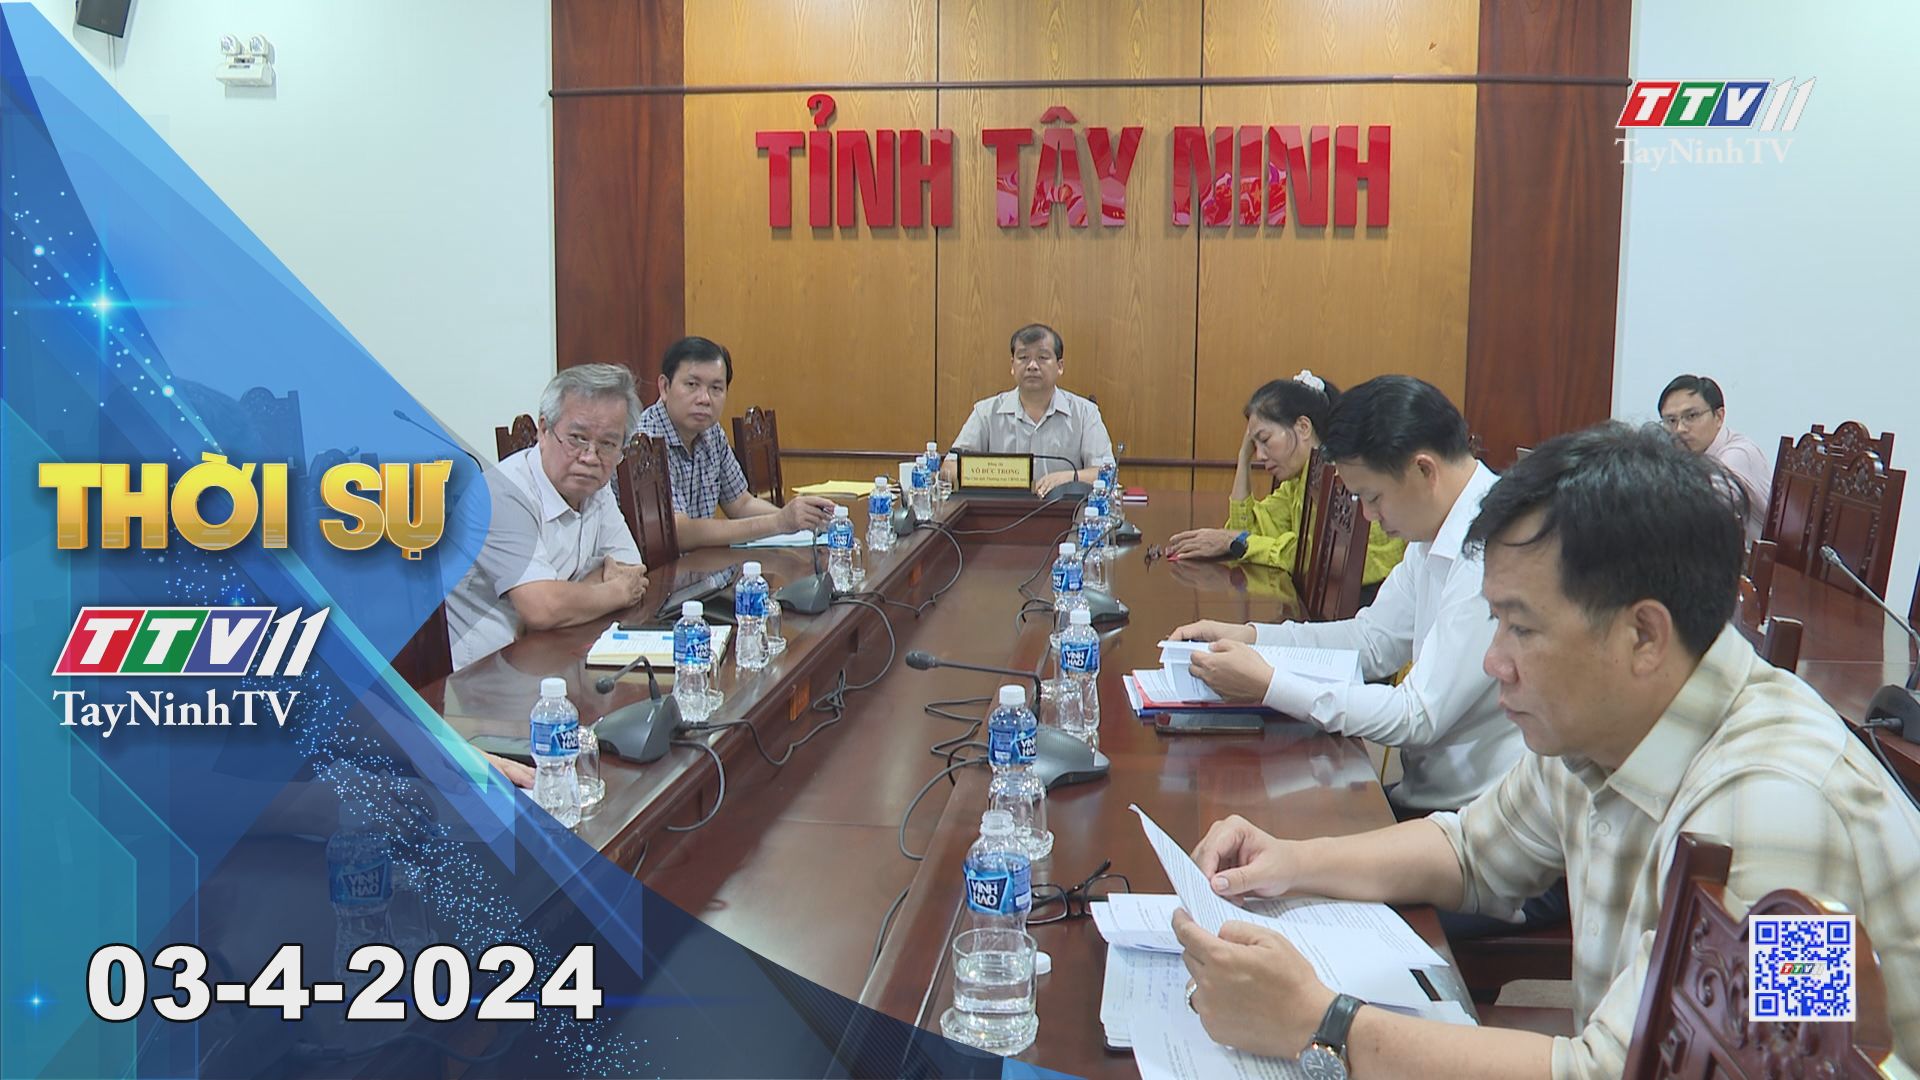 Thời sự Tây Ninh 03-4-2024 | Tin tức hôm nay | TayNinhTV